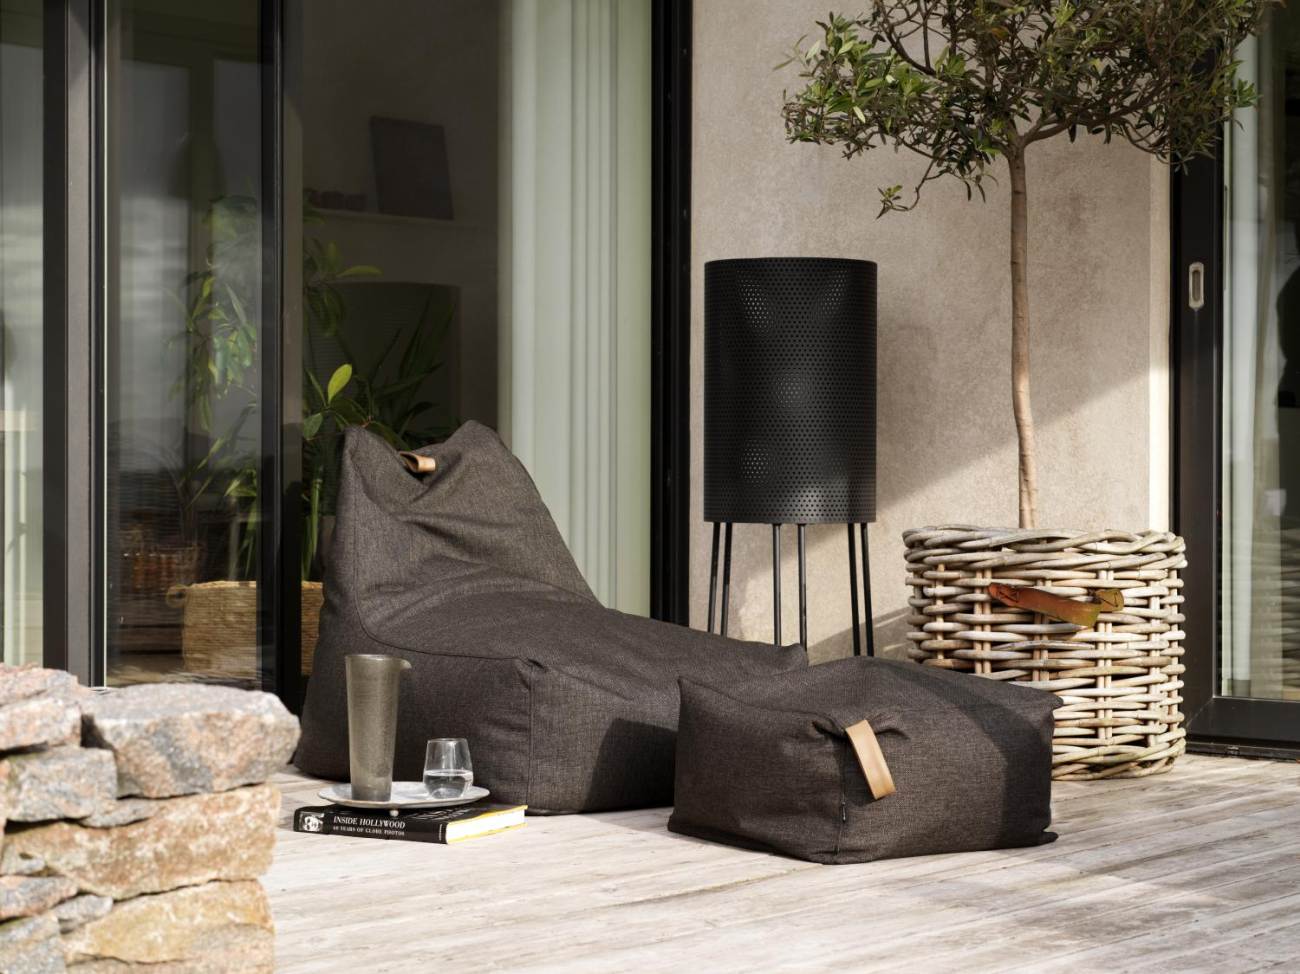 Der Gartensessel Kotte überzeugt mit seinem modernen Design. Gefertigt wurde er aus Olefin-Stoff, welches einen schwarzen Farbton besitzt. Die Sitzhöhe des Sessels beträgt 28 cm.